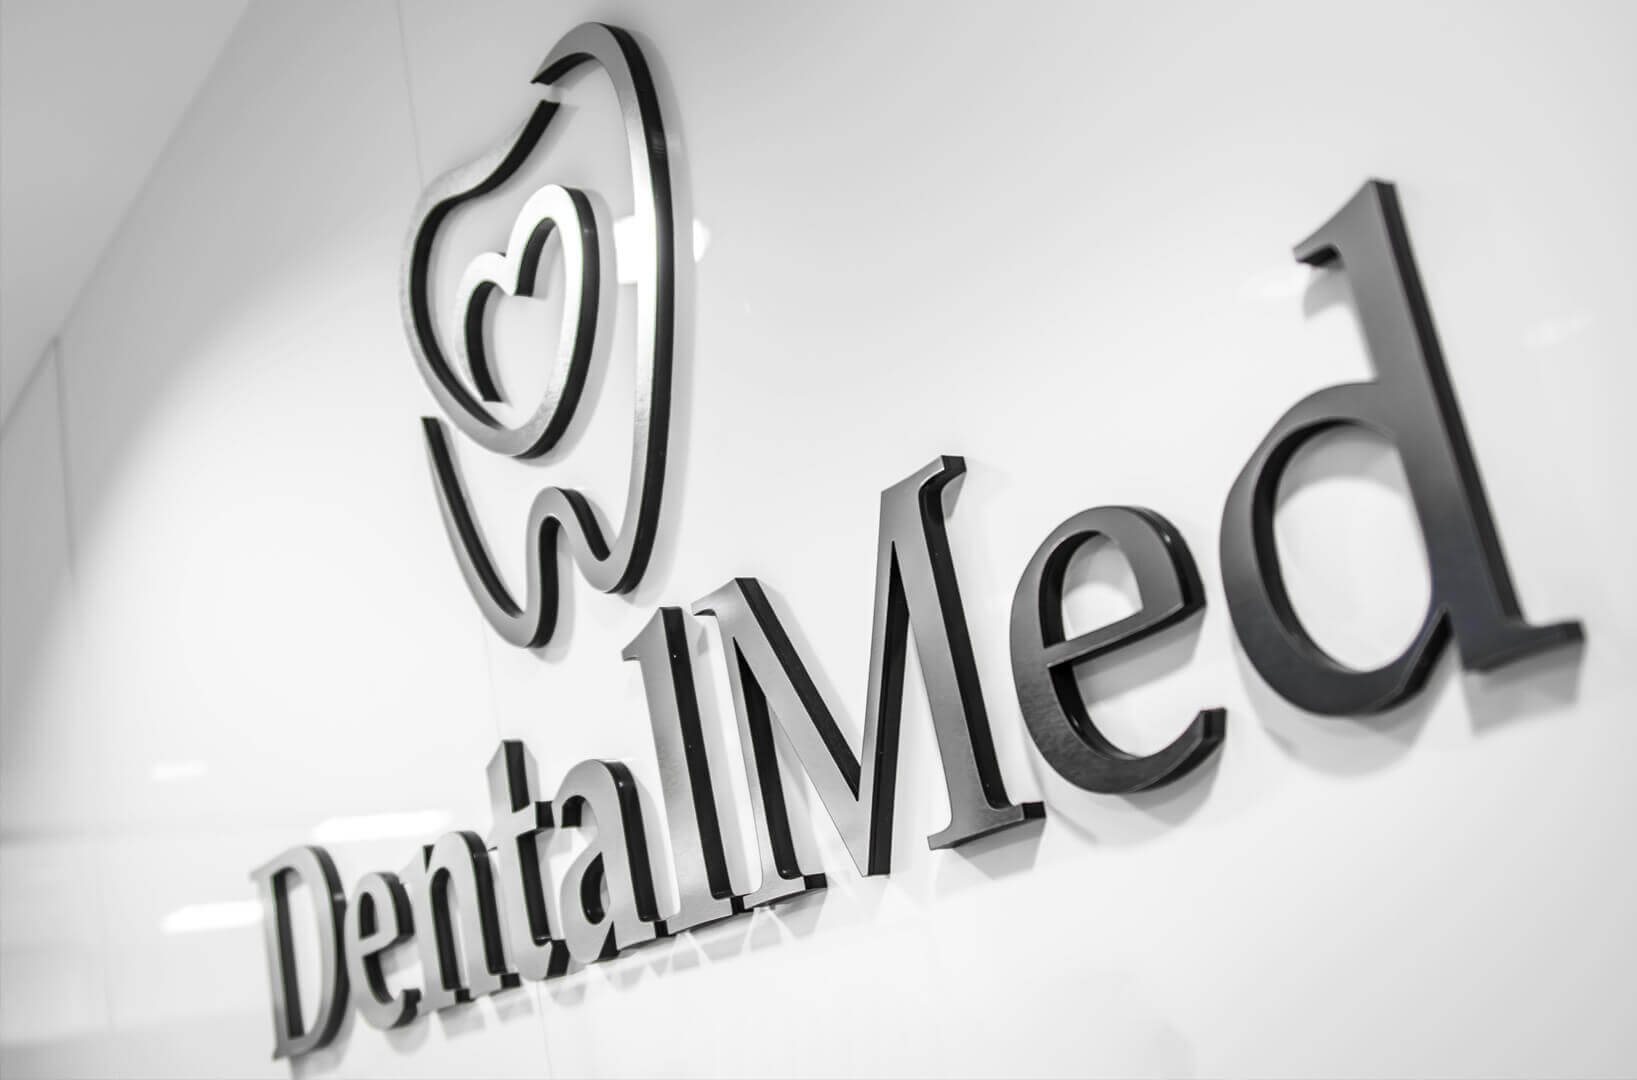 DentalMed - DentalMed - logo i litery przestrzenne 3D wykonane z plexi umieszczone przy recepcji